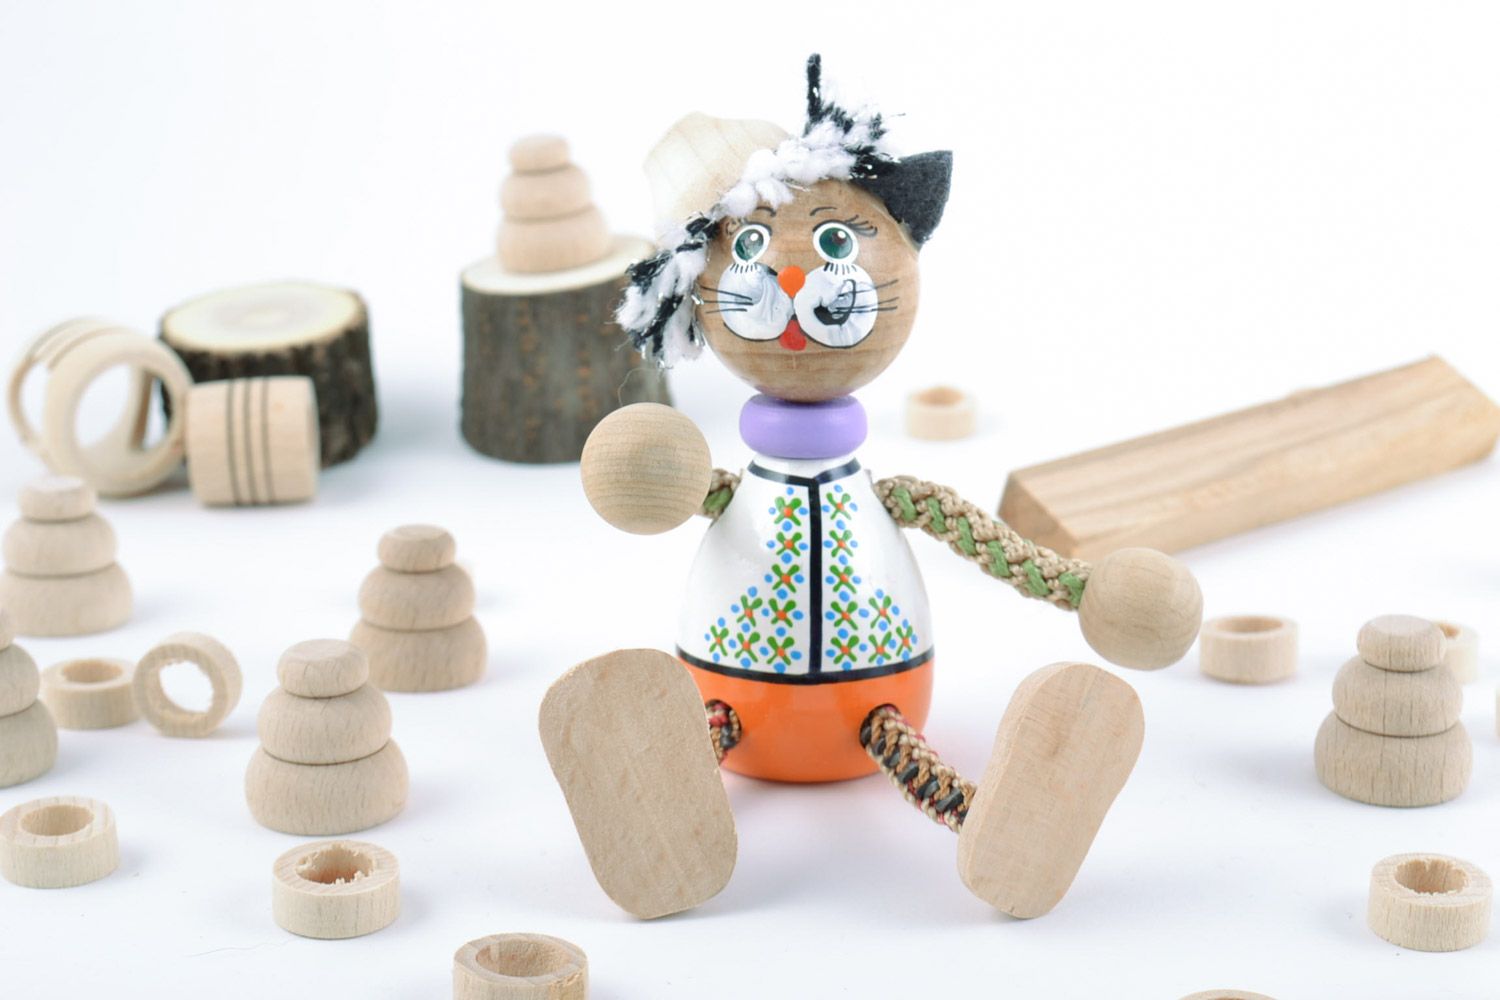 Handmade Spielzeug aus Holz in Form vom Kater öko freundlich für Kinder schön foto 1